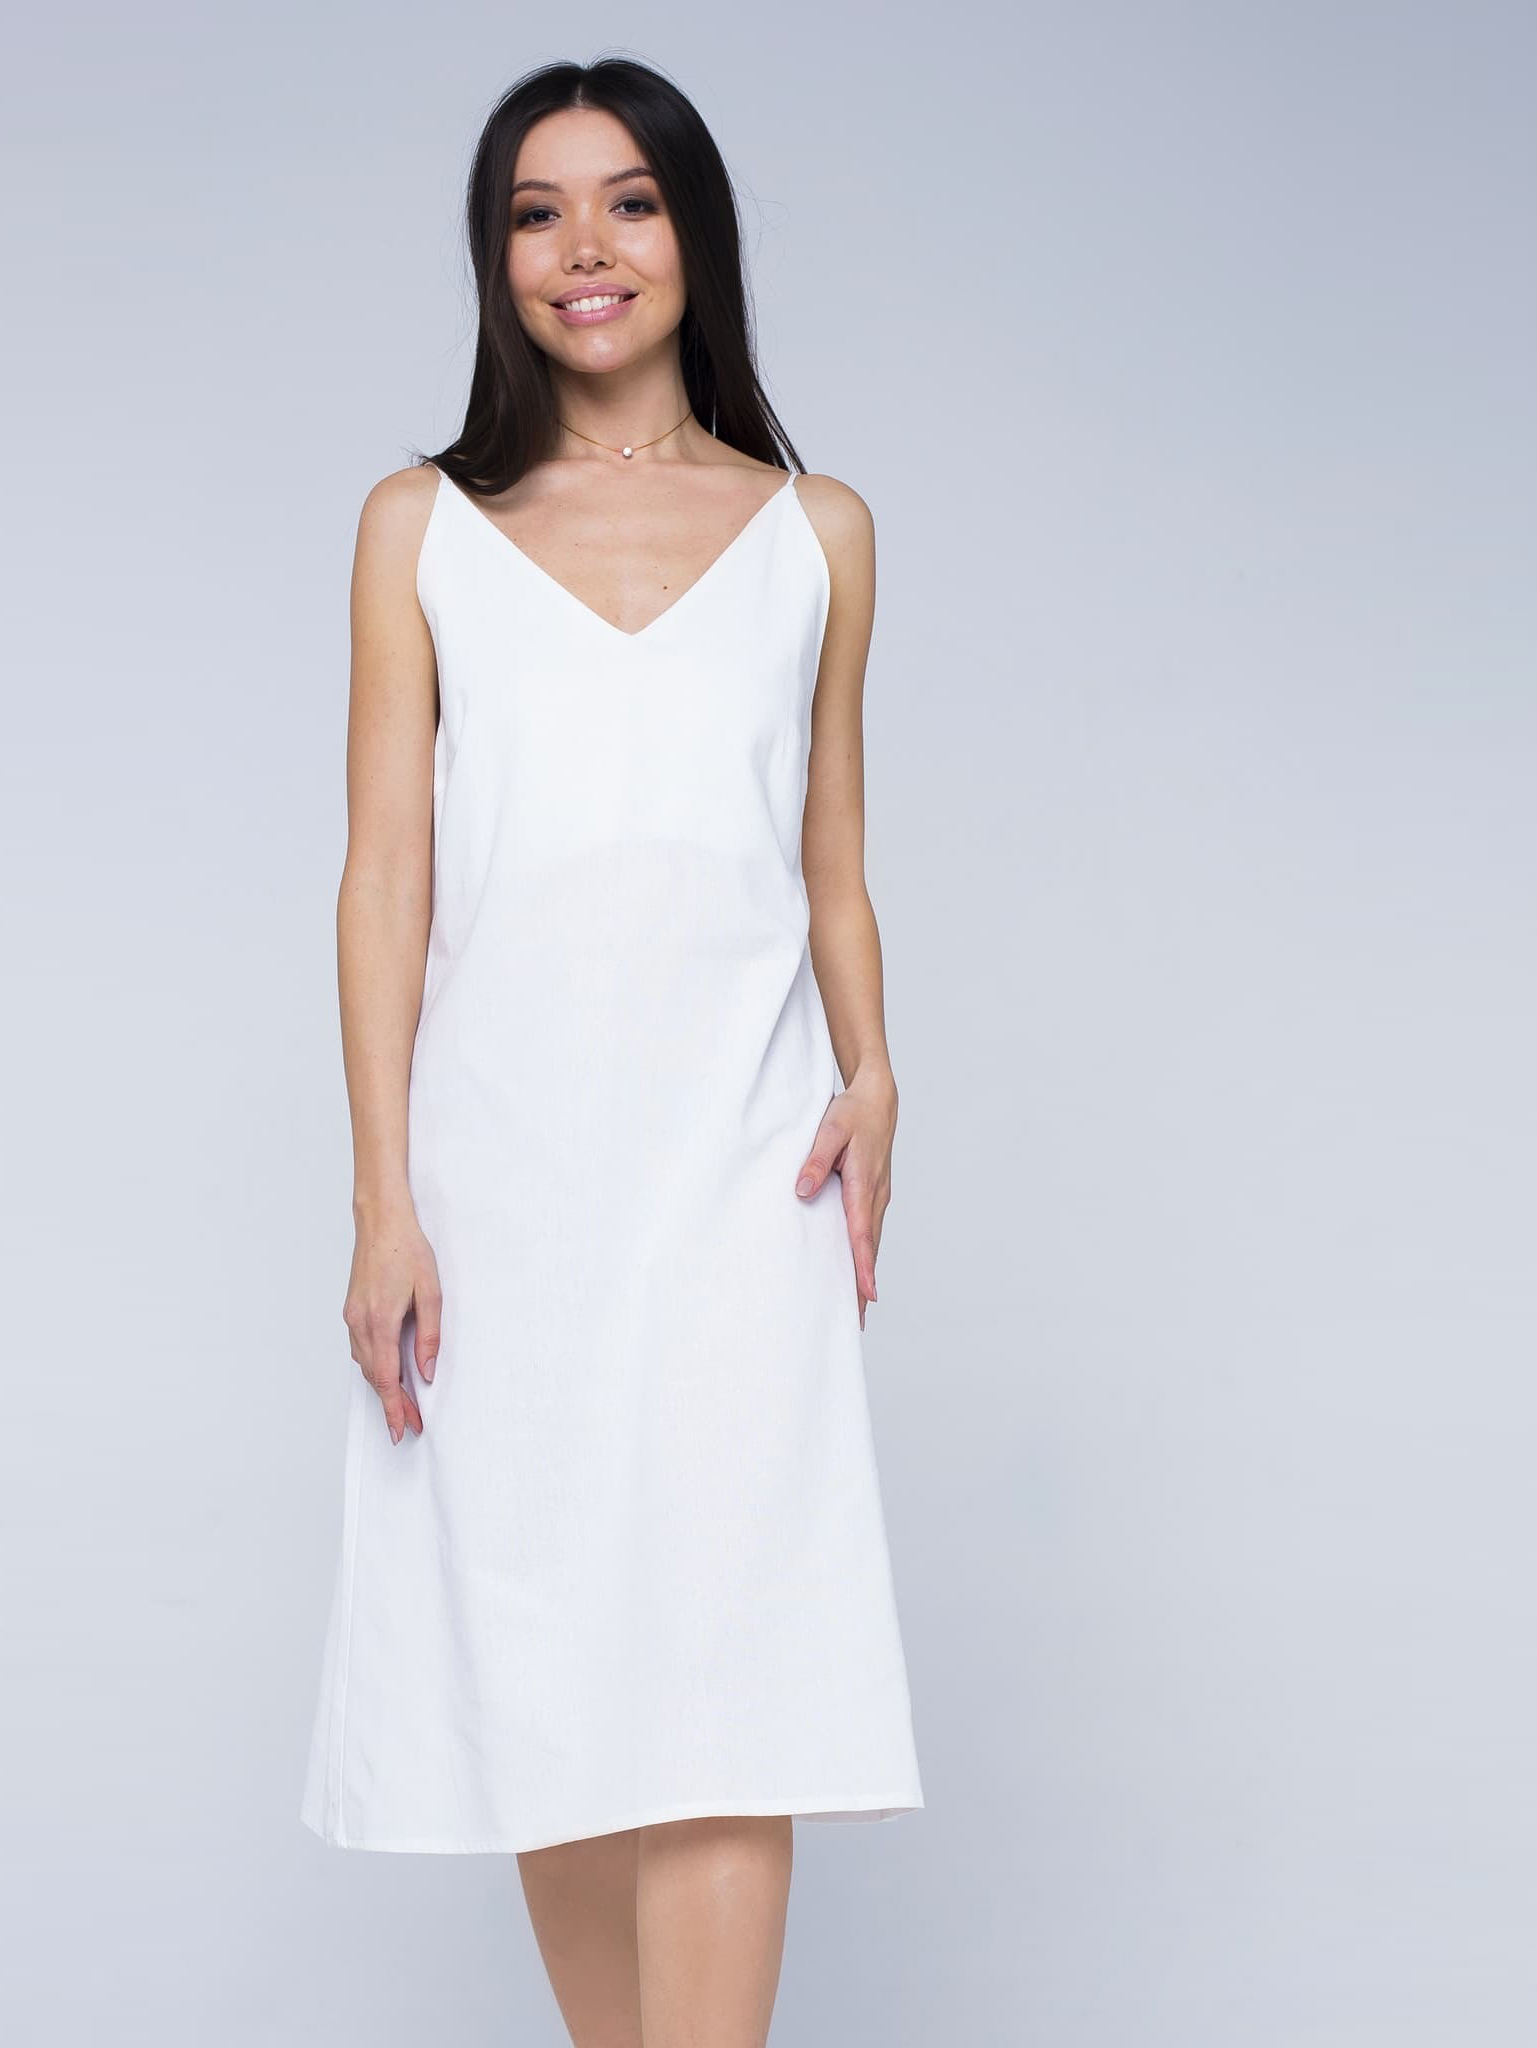 Платье белое льняное с открытой спинкой миди 